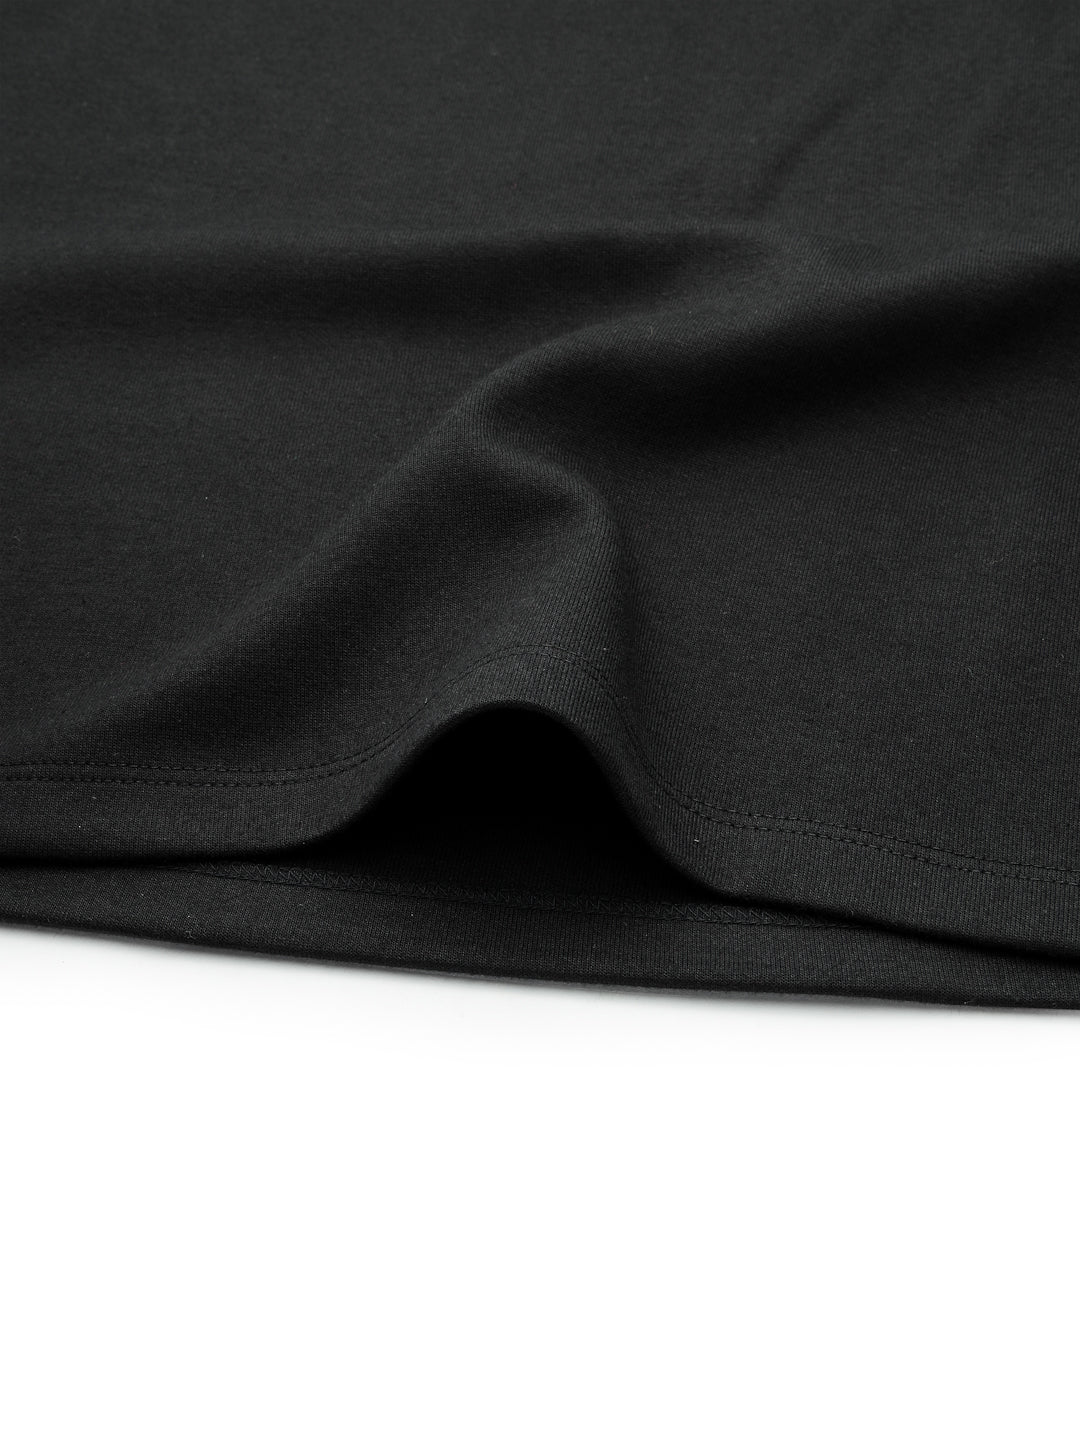 Solid half-sleeved 100% cotton Slub top